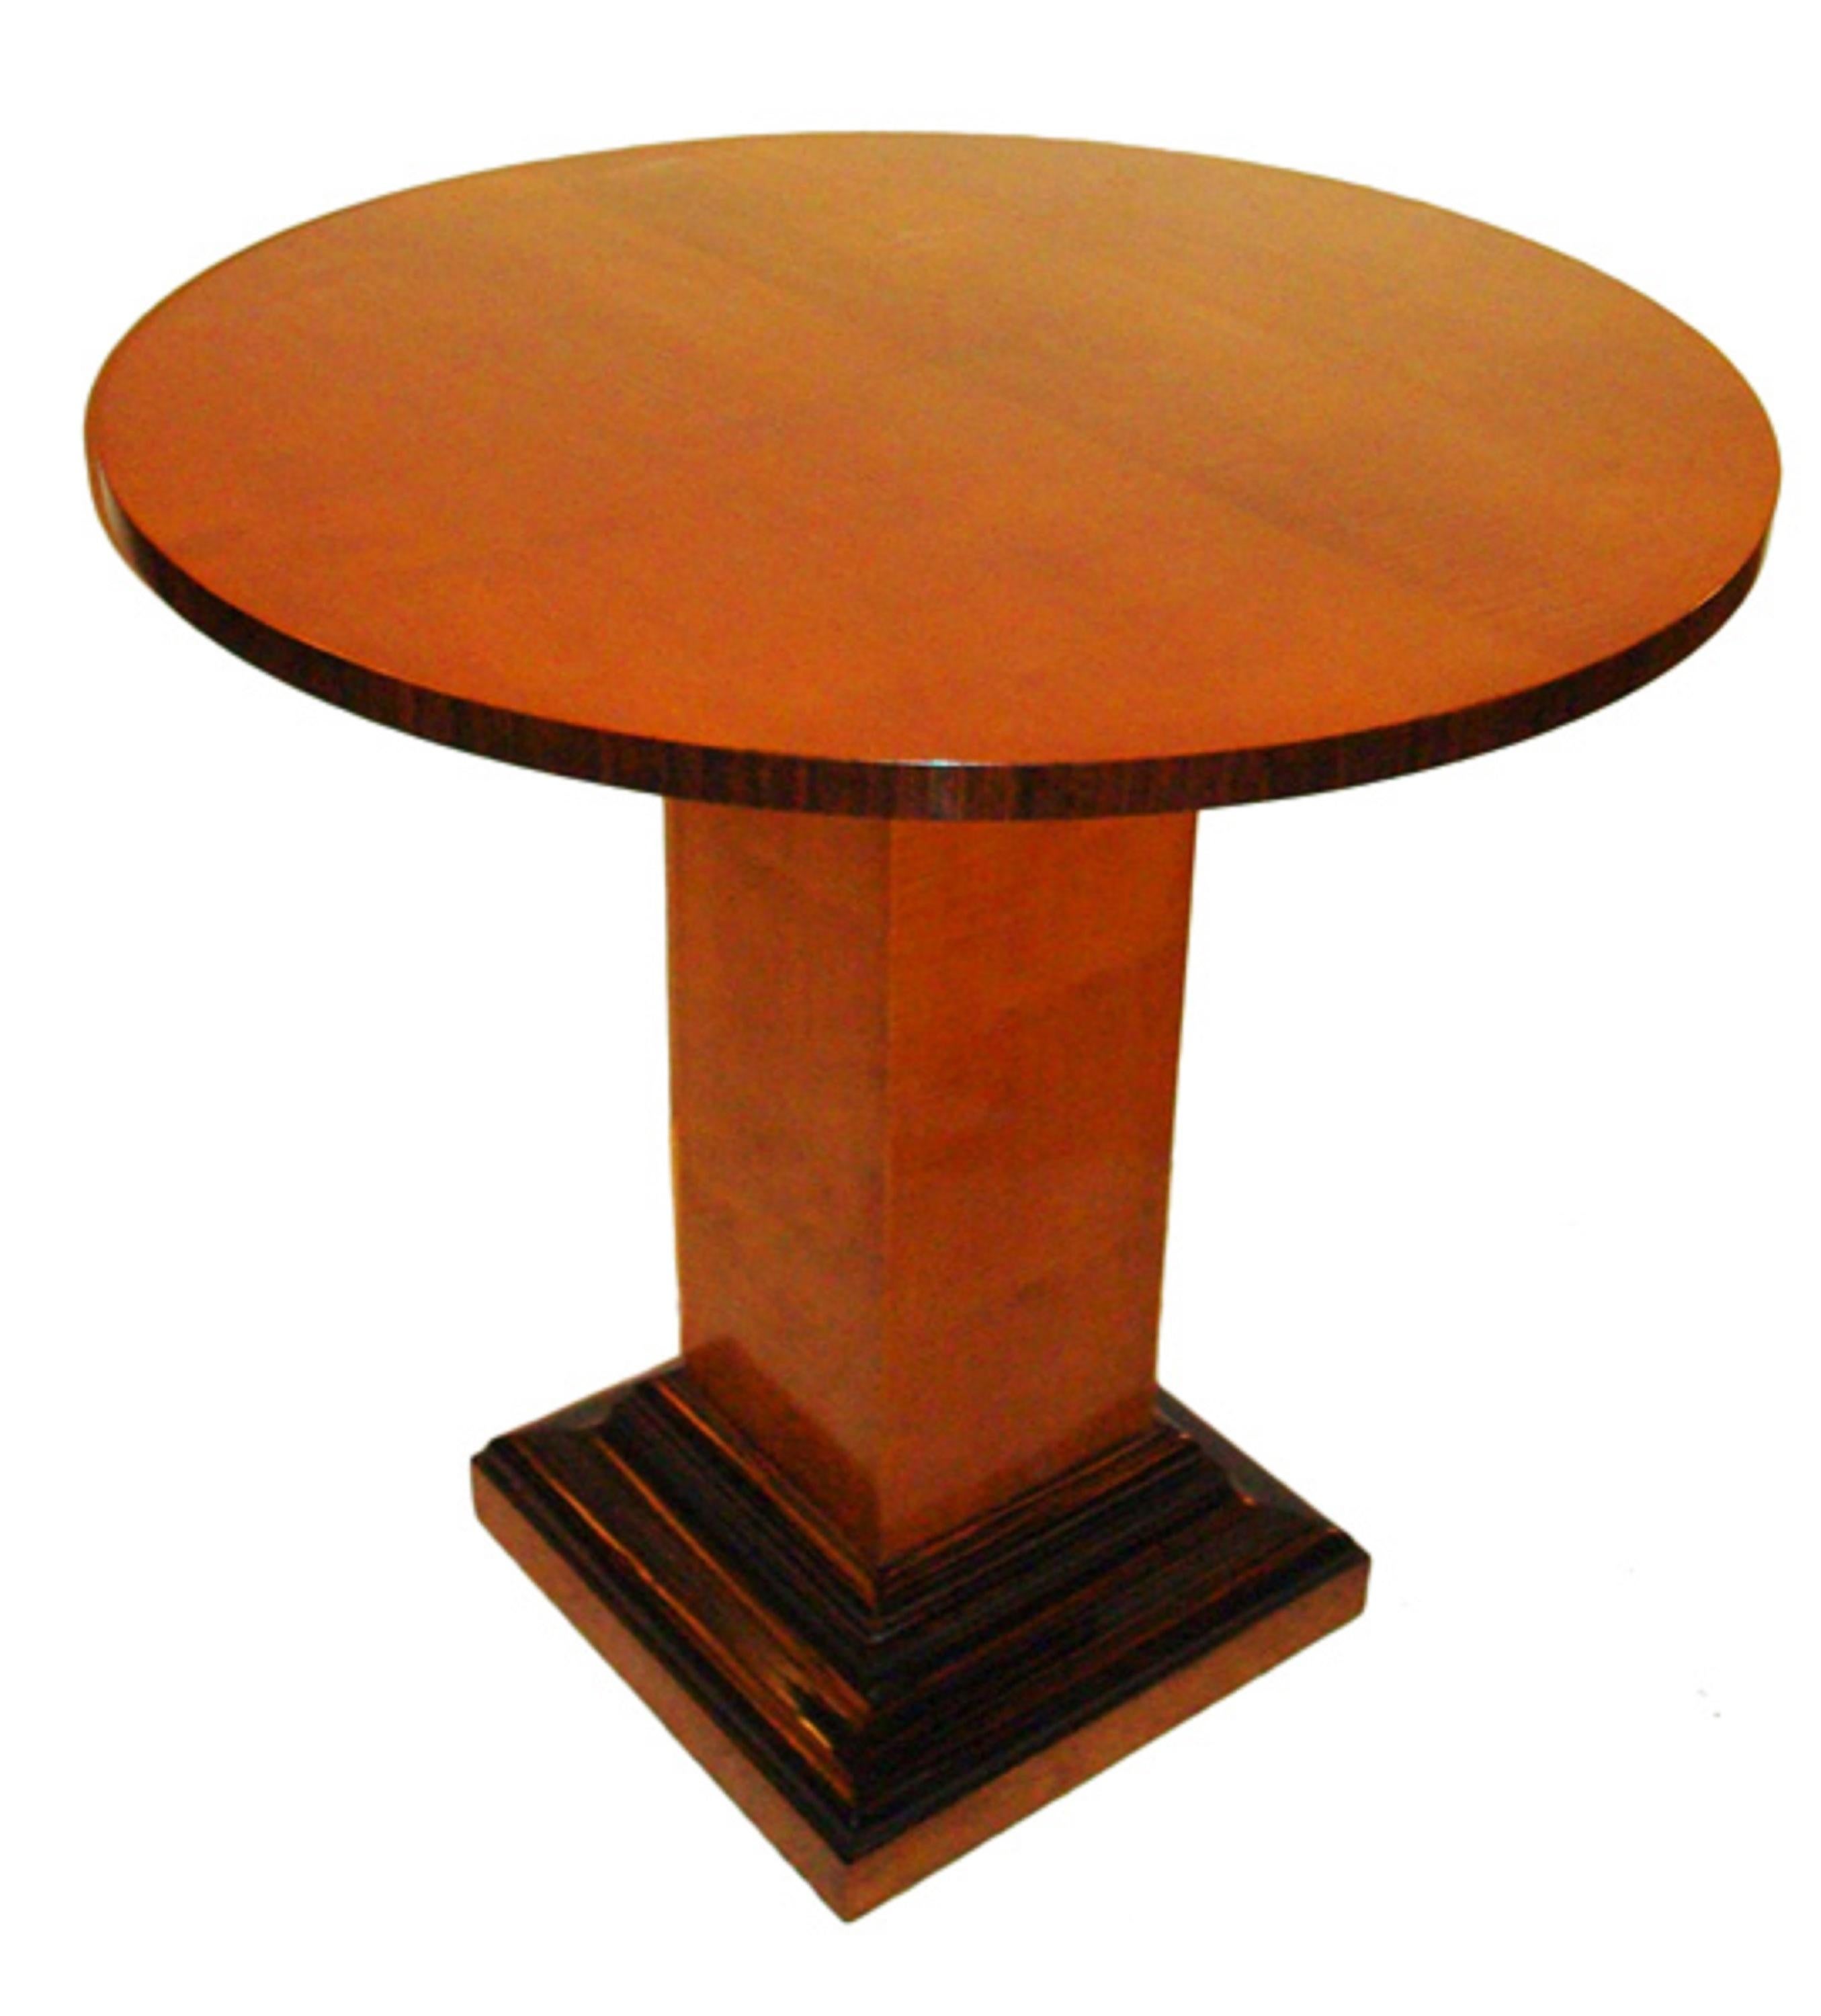 Tisch Art Deco

Jahr: 1920
Land: Französisch
Holz 
Es ist ein eleganter und anspruchsvoller Tisch.
Sie wollen in den goldenen Jahren leben, das ist der Tisch, den Ihr Projekt braucht.
Seit 1982 haben wir uns auf den Verkauf von Art Deco, Jugendstil